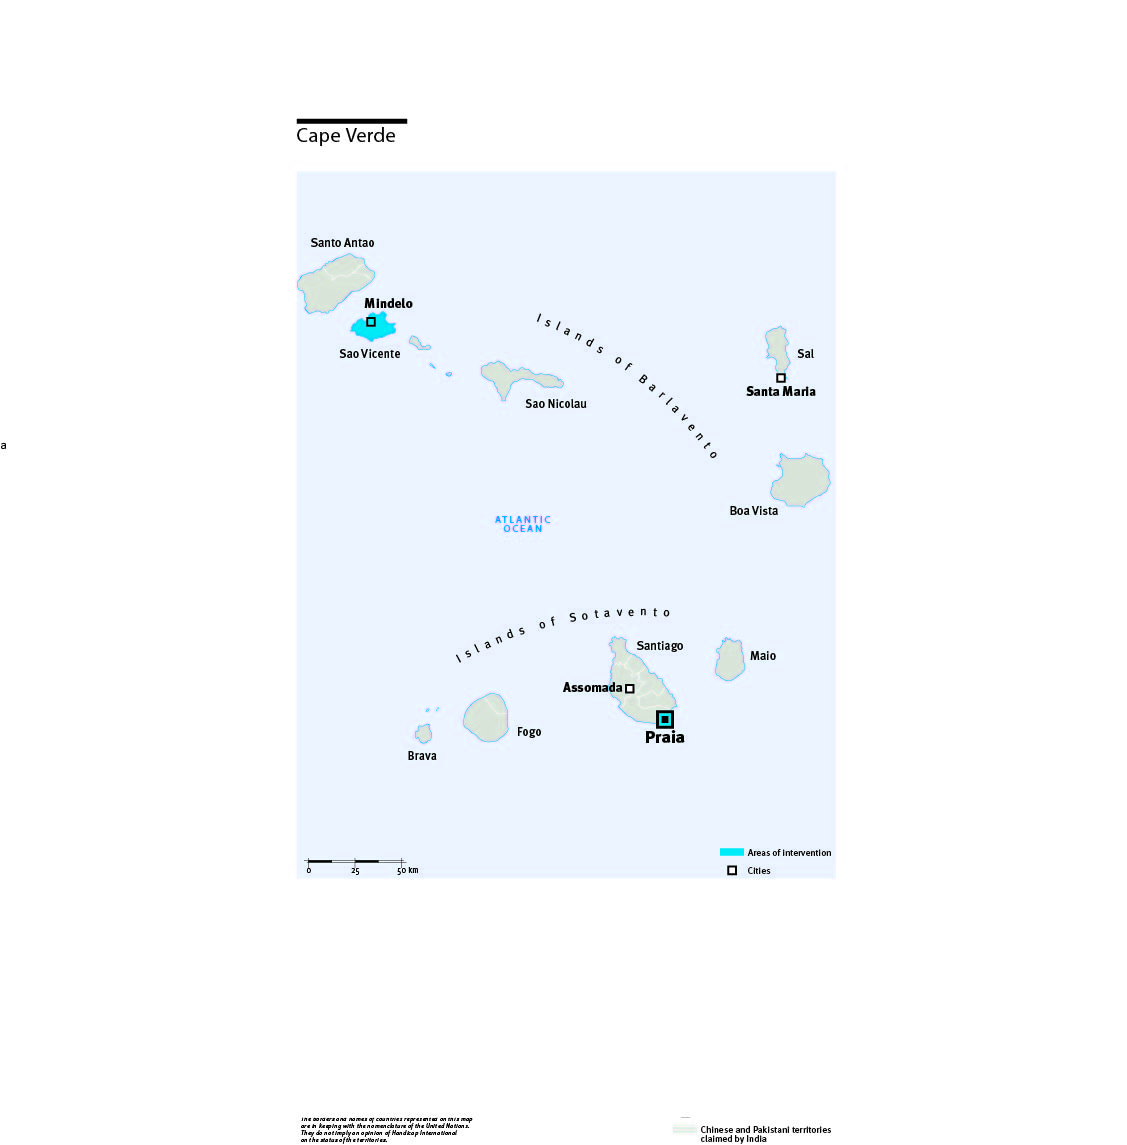 Carte des interventions de HI au Cap Vert